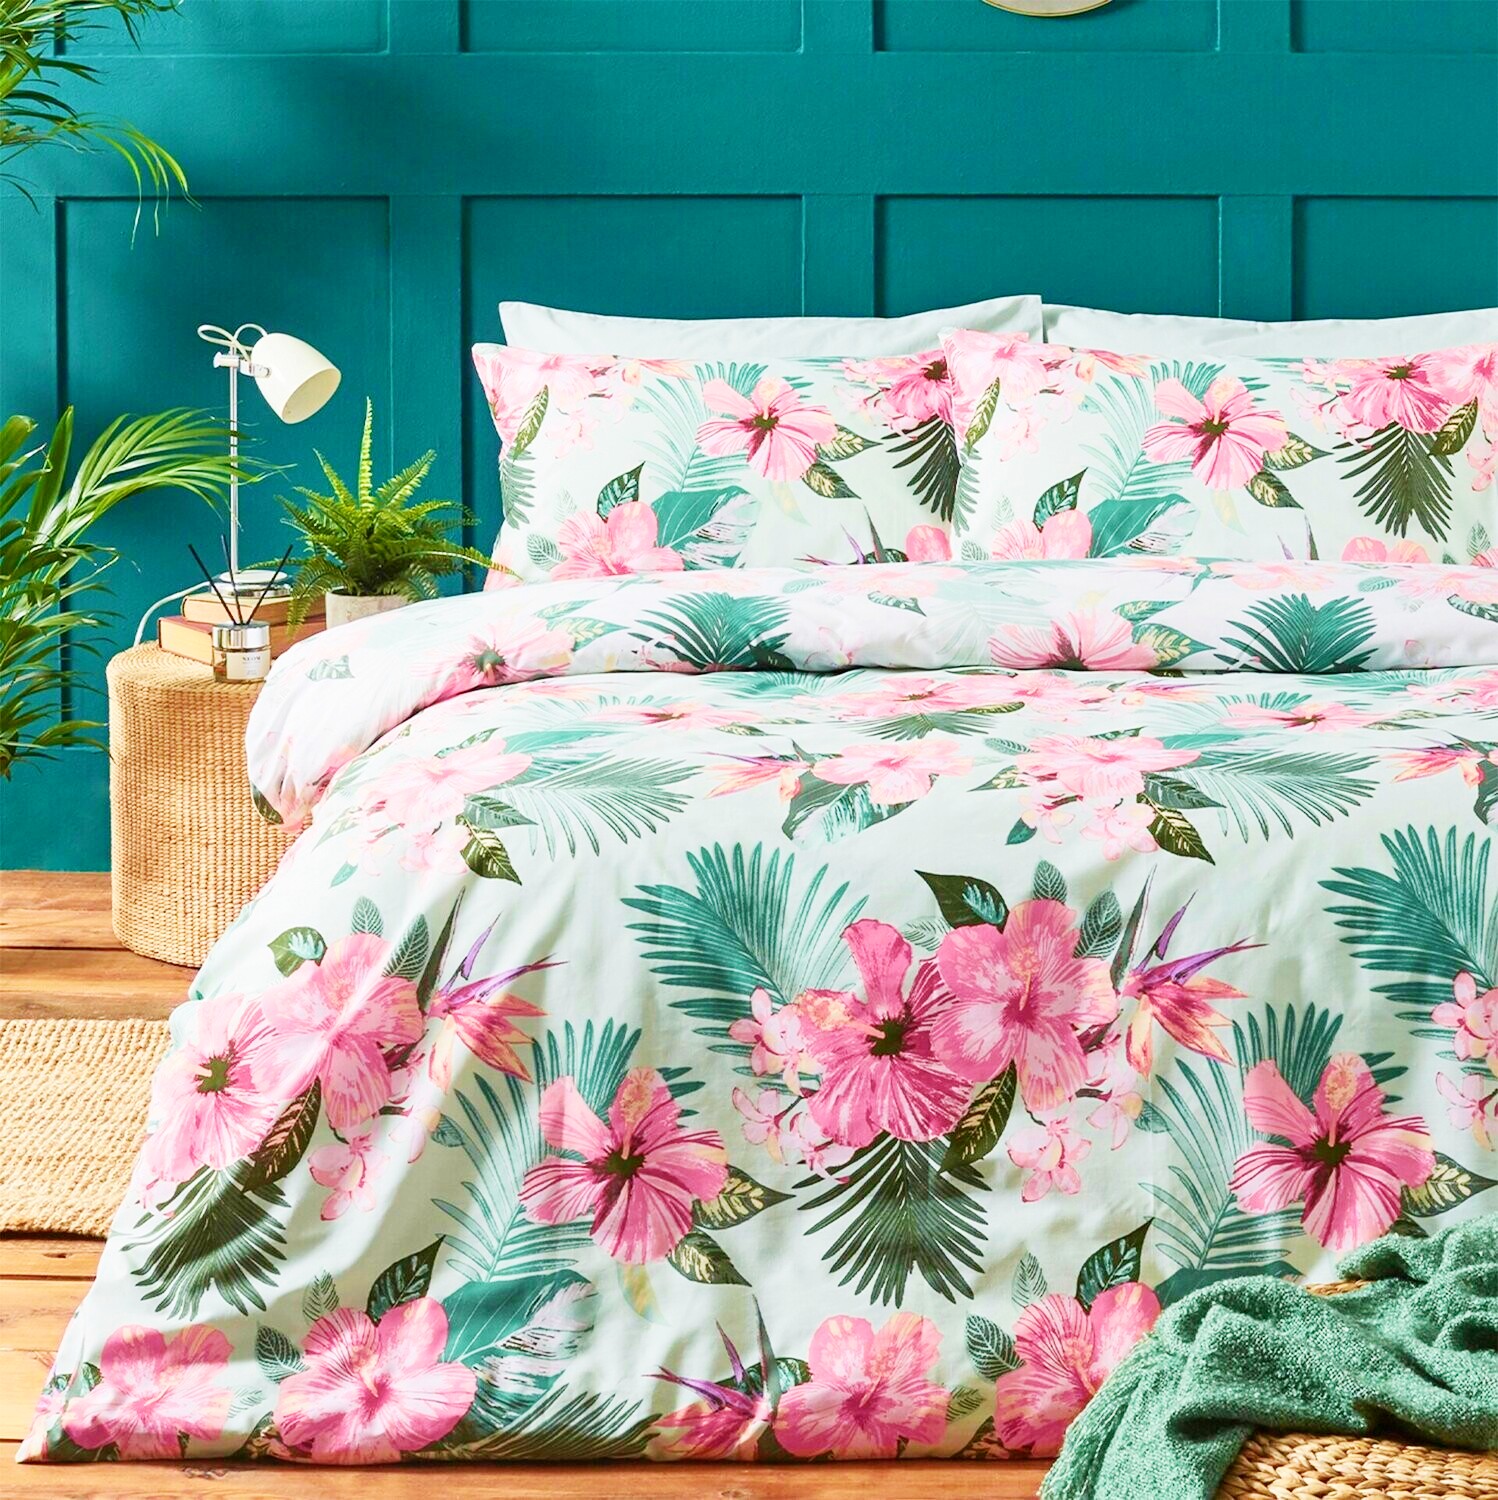 <img src="pink.jpg" alt="pink floral bedding in green bedroom"/> 